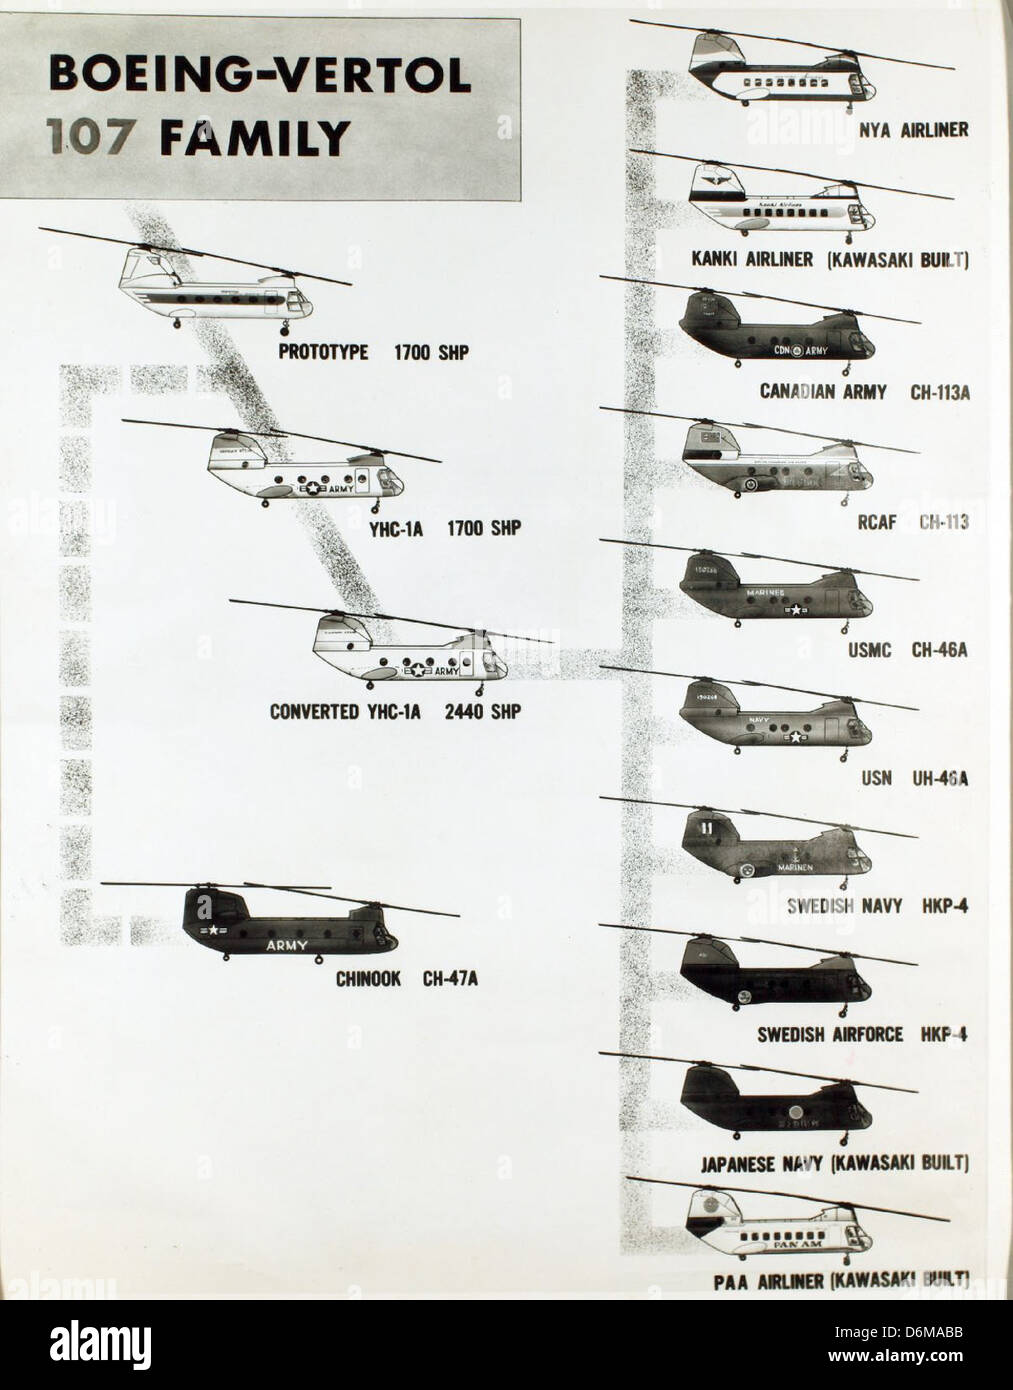 Boeing-Vertol 107 Familie Chart und Brief von Richard Gidner von Boeing-Vertol NHHS Foto Stockfoto